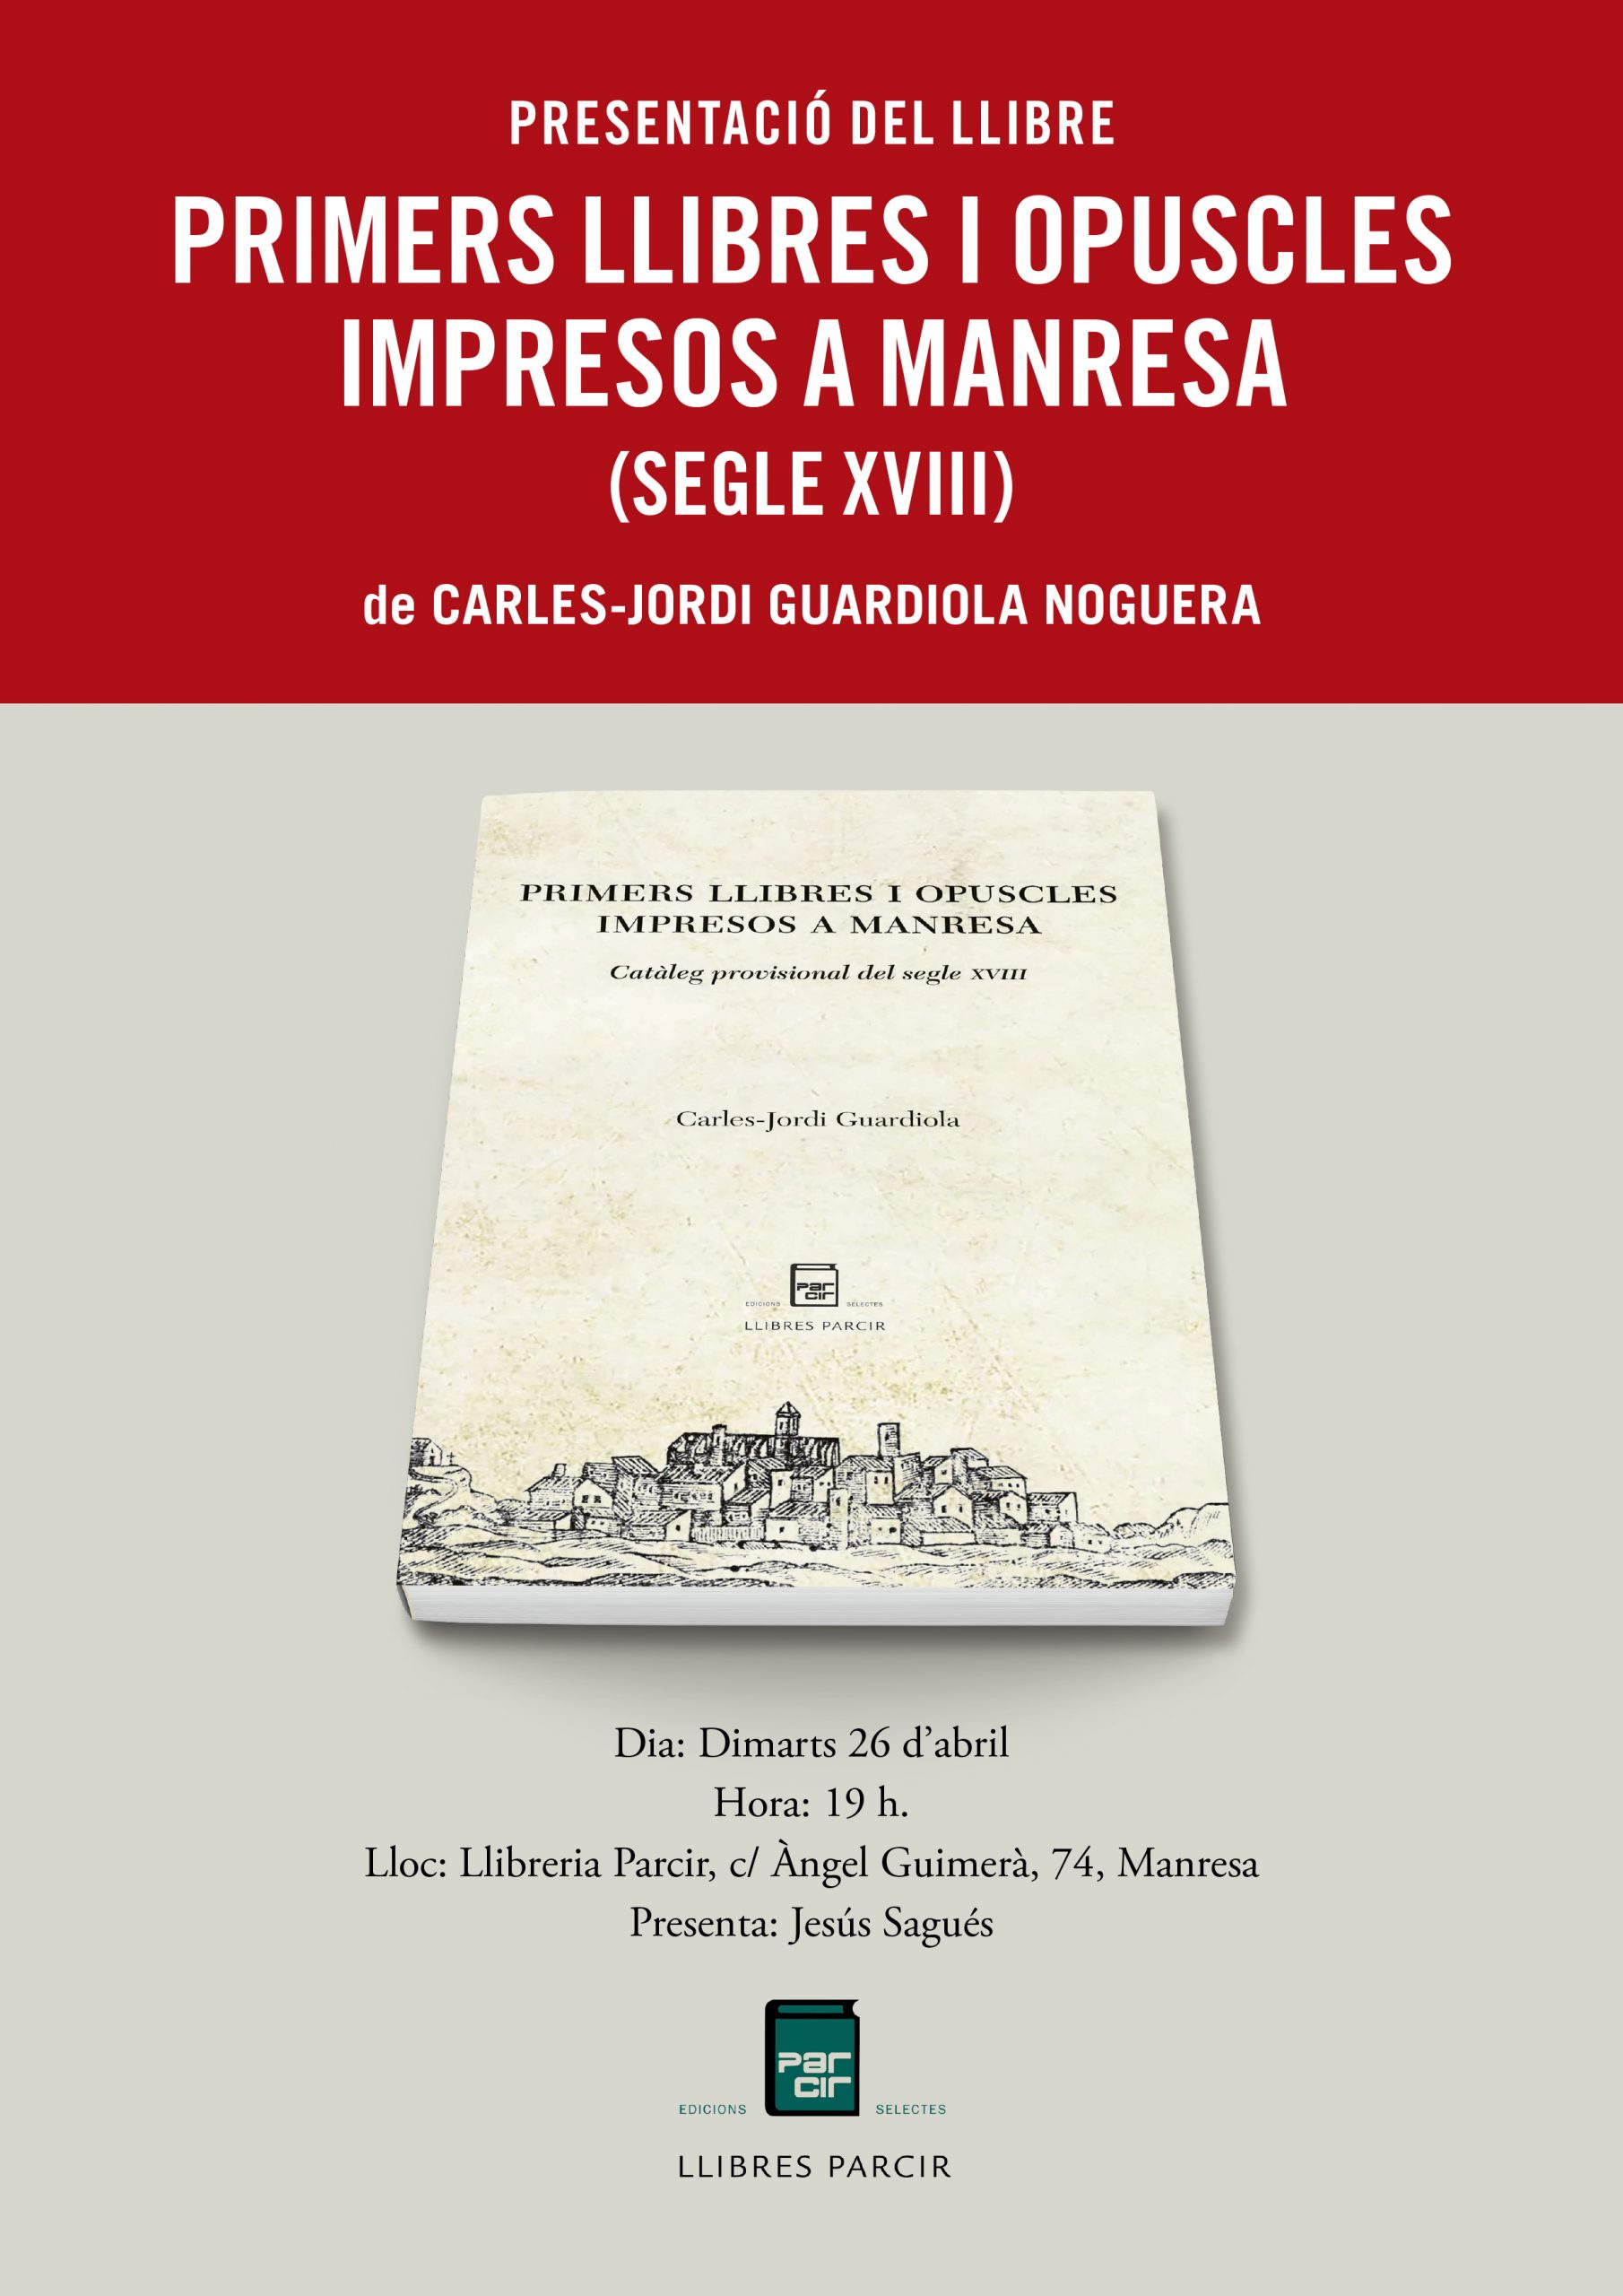 Presentació del llibre: “Primers llibres i opuscles impresos a Manresa”